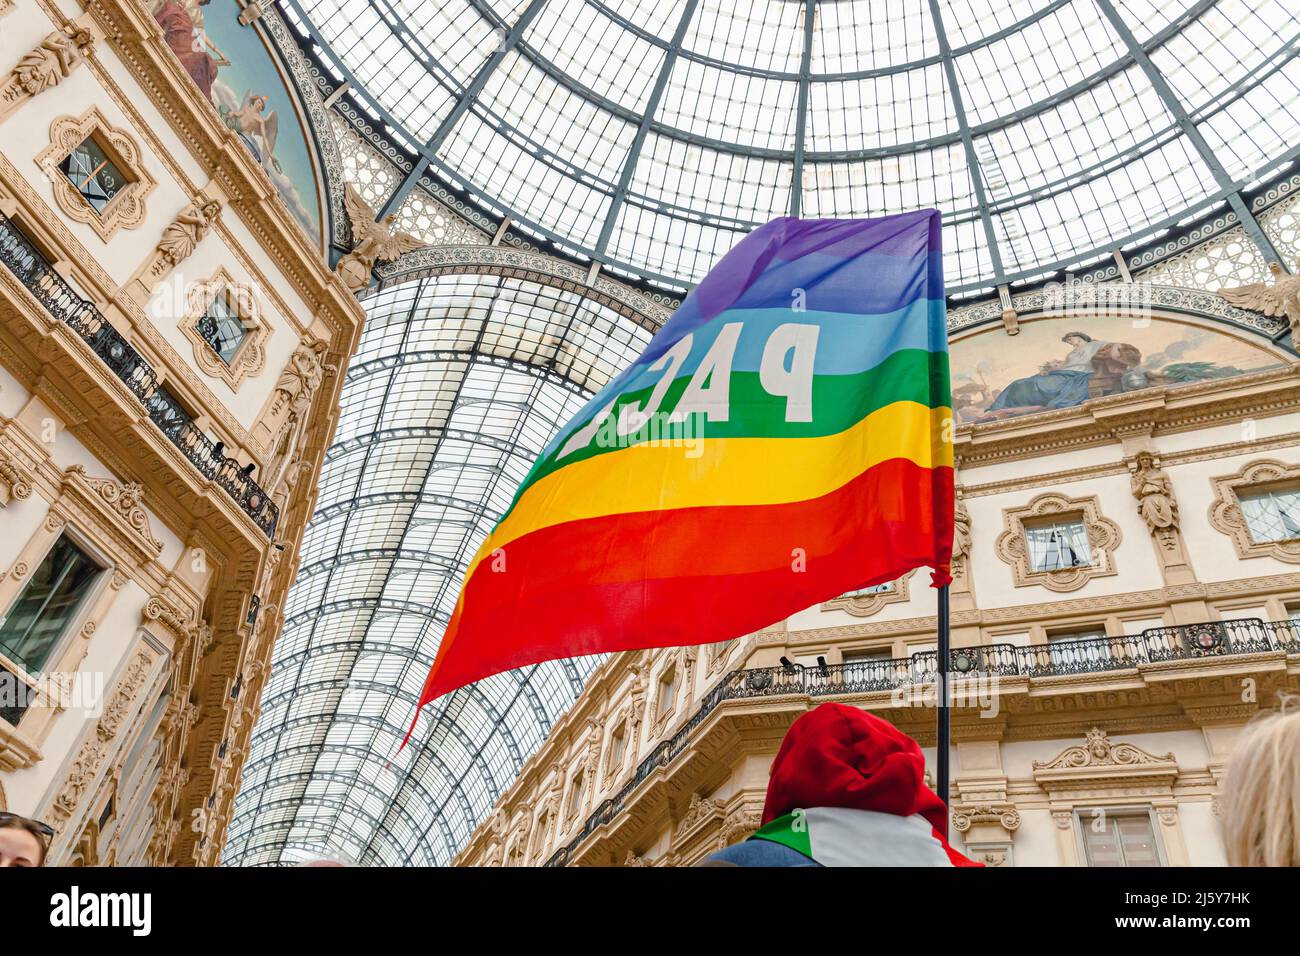 Ein Friedensaktivist hält während einer pazifistischen Demonstration gegen den Faschismus und den Russland-Ukraine-Krieg eine Regenbogenfahne. Friedensflagge in Mailand, Italien Stockfoto